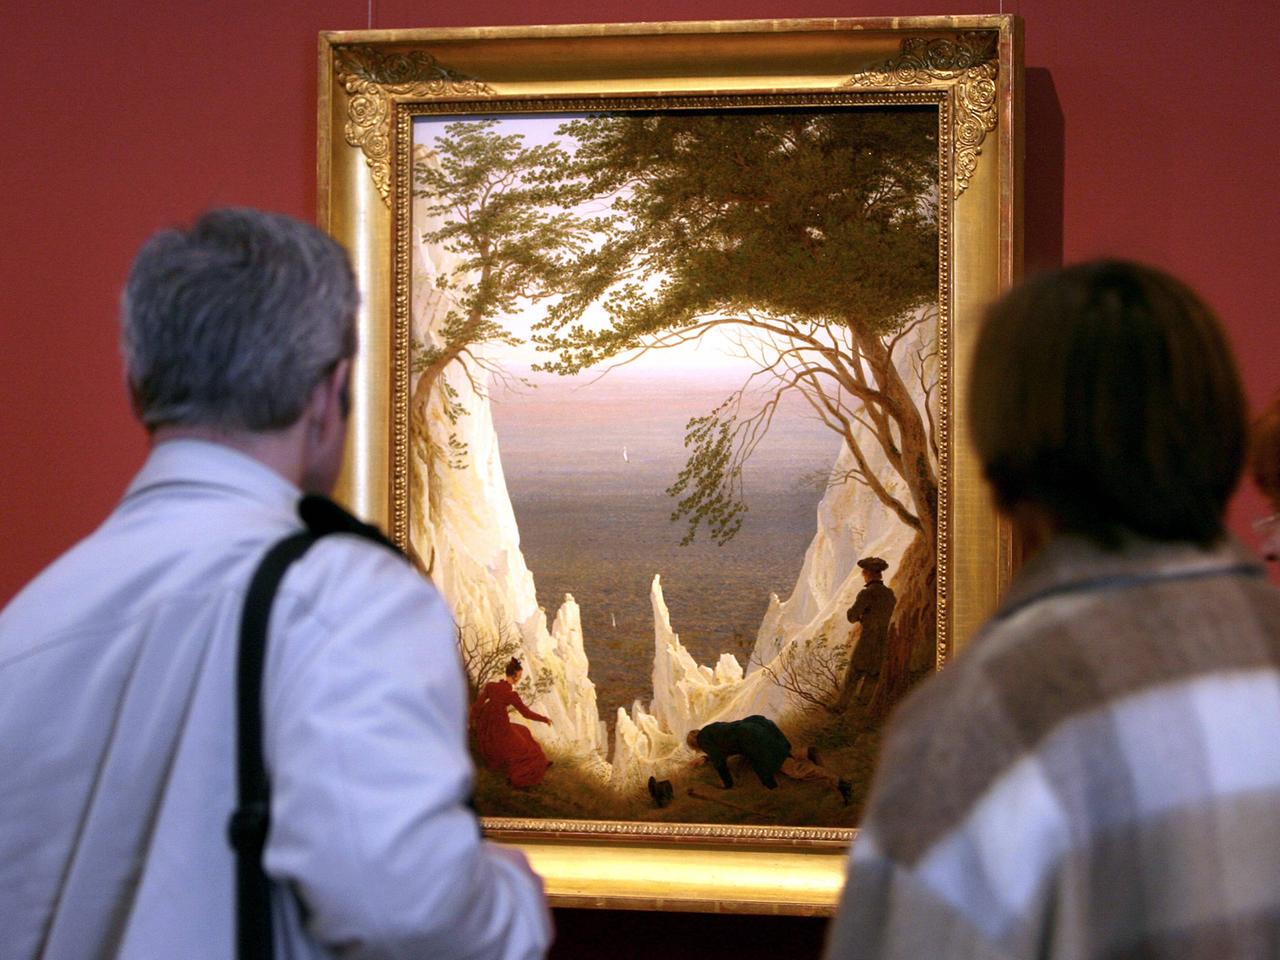 Besucher betrachten das Gemälde "Kreidefelsen auf Rügen" von Caspar David Friedrich während der Ausstellung "Die Erfindung der Romantik" im Museum Folkwang in Essen.